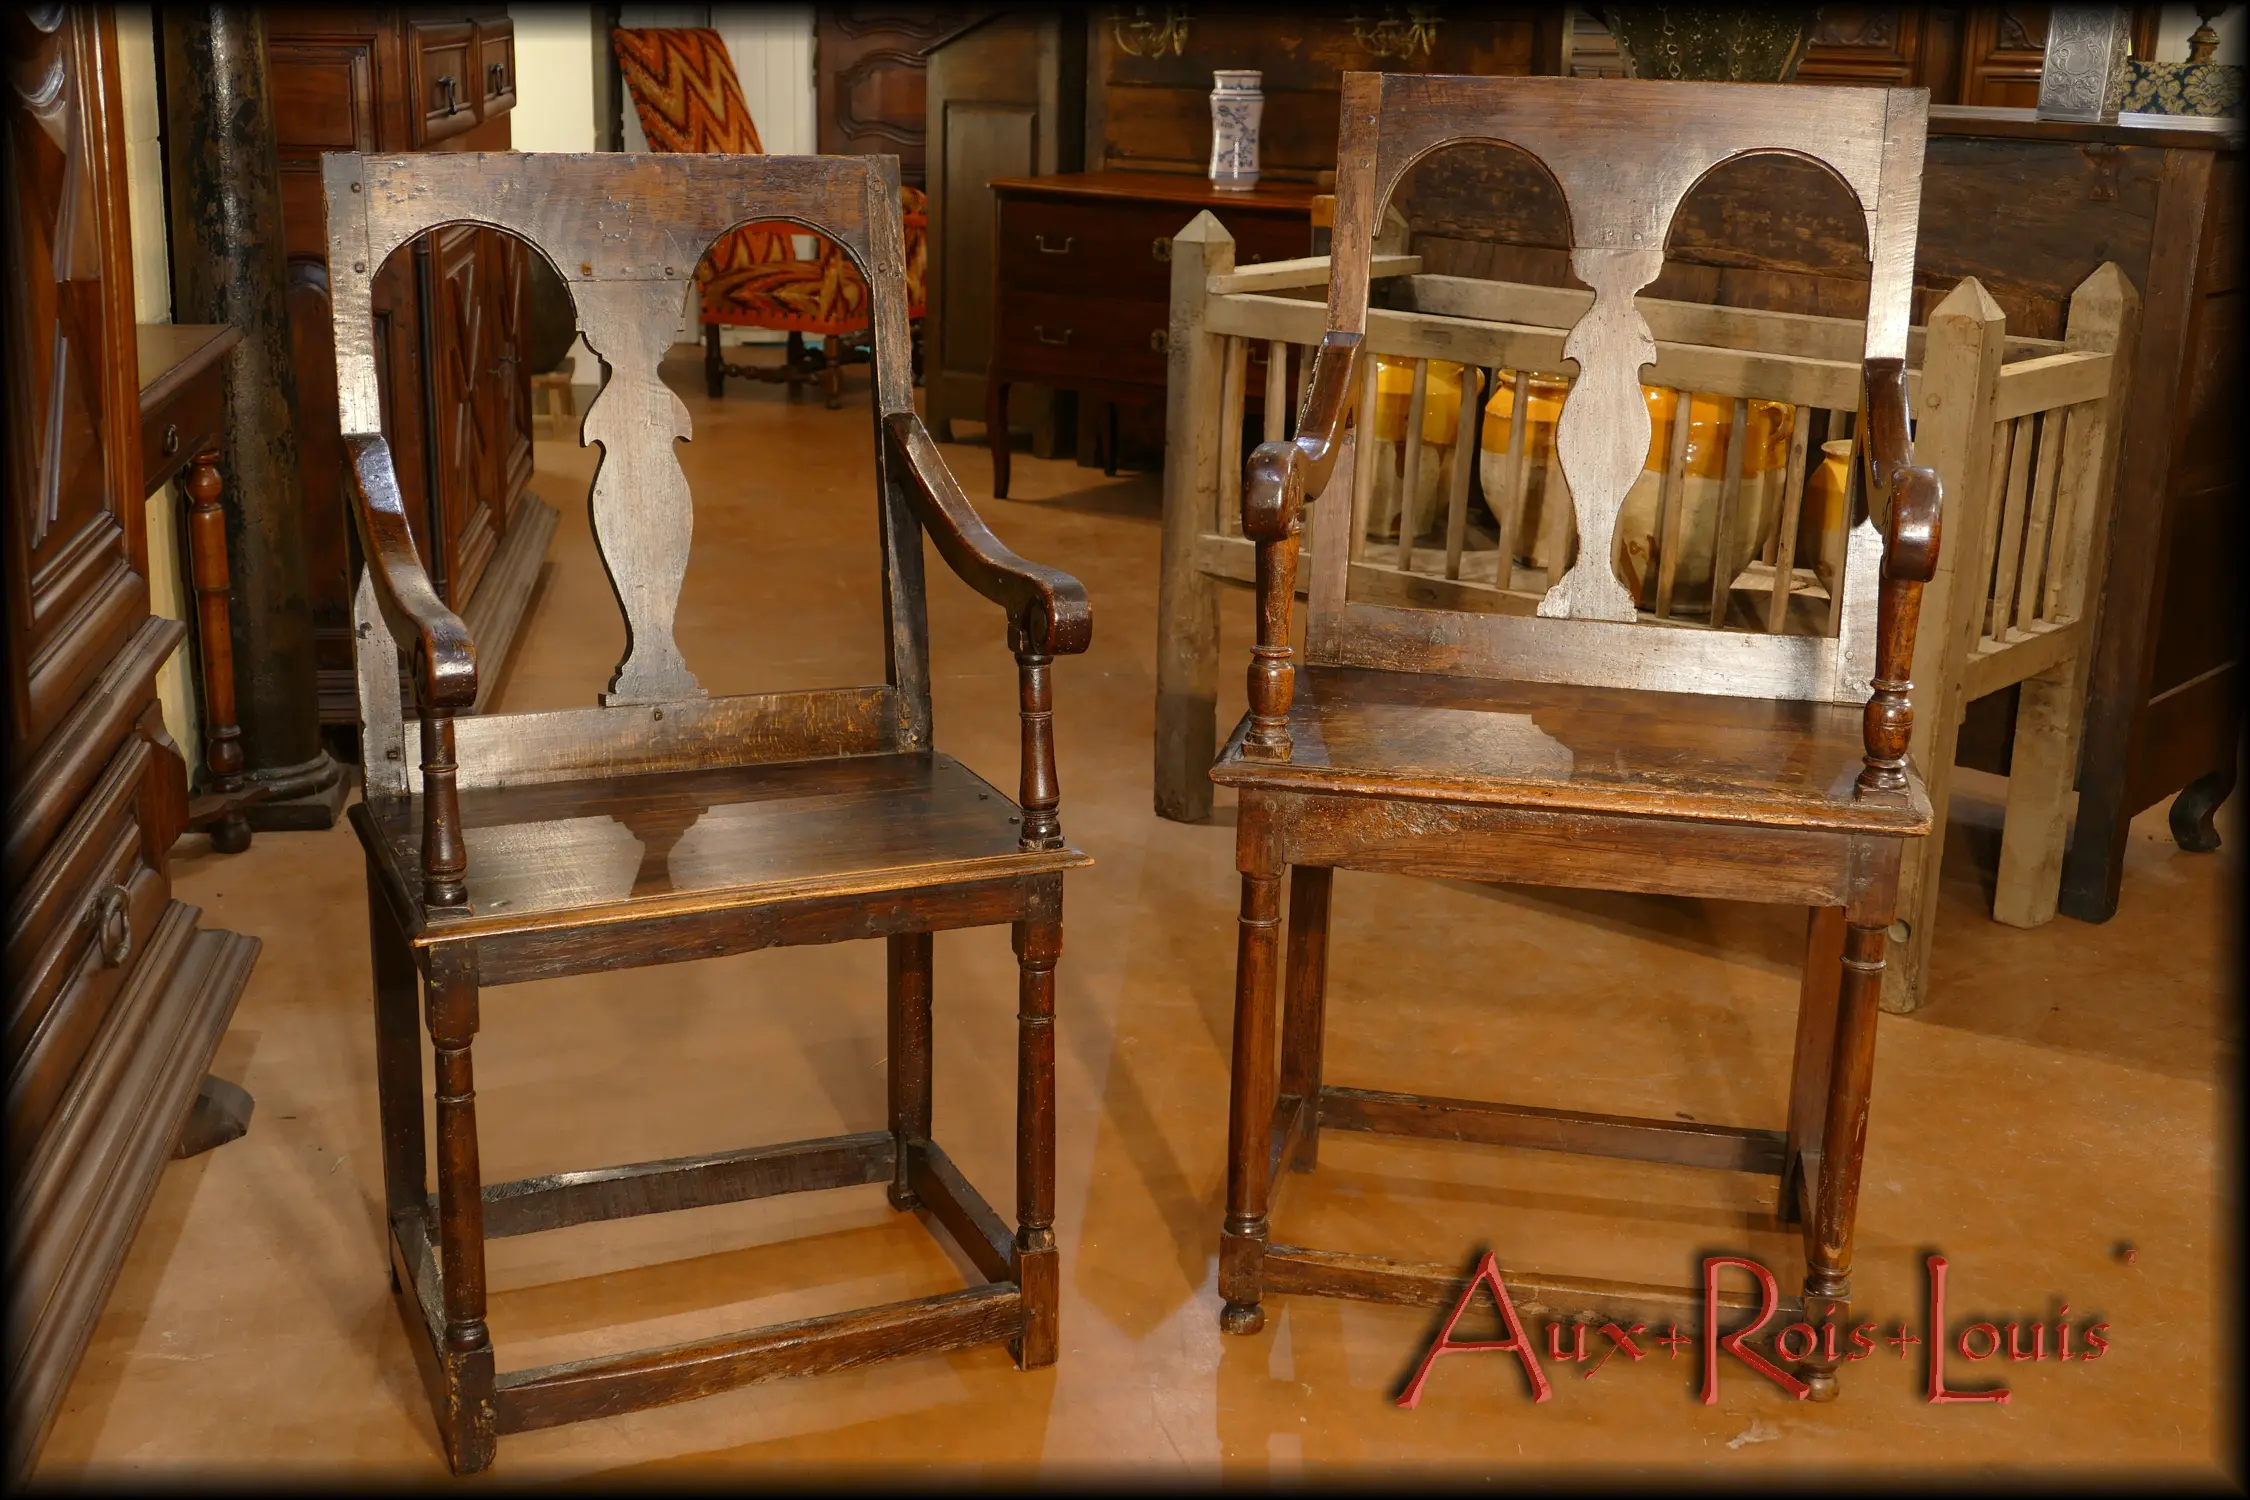 Exemples d’assises considérées comme confortables sous Louis XIII, voici deux chaises à bras aux dossiers quasiment droits dont la douceur réside plutôt la façon des accoudoirs, terminés en crosse, et le tournage, dans l’esprit Renaissance, des montants reliant dossiers et accoudoirs au piétement.